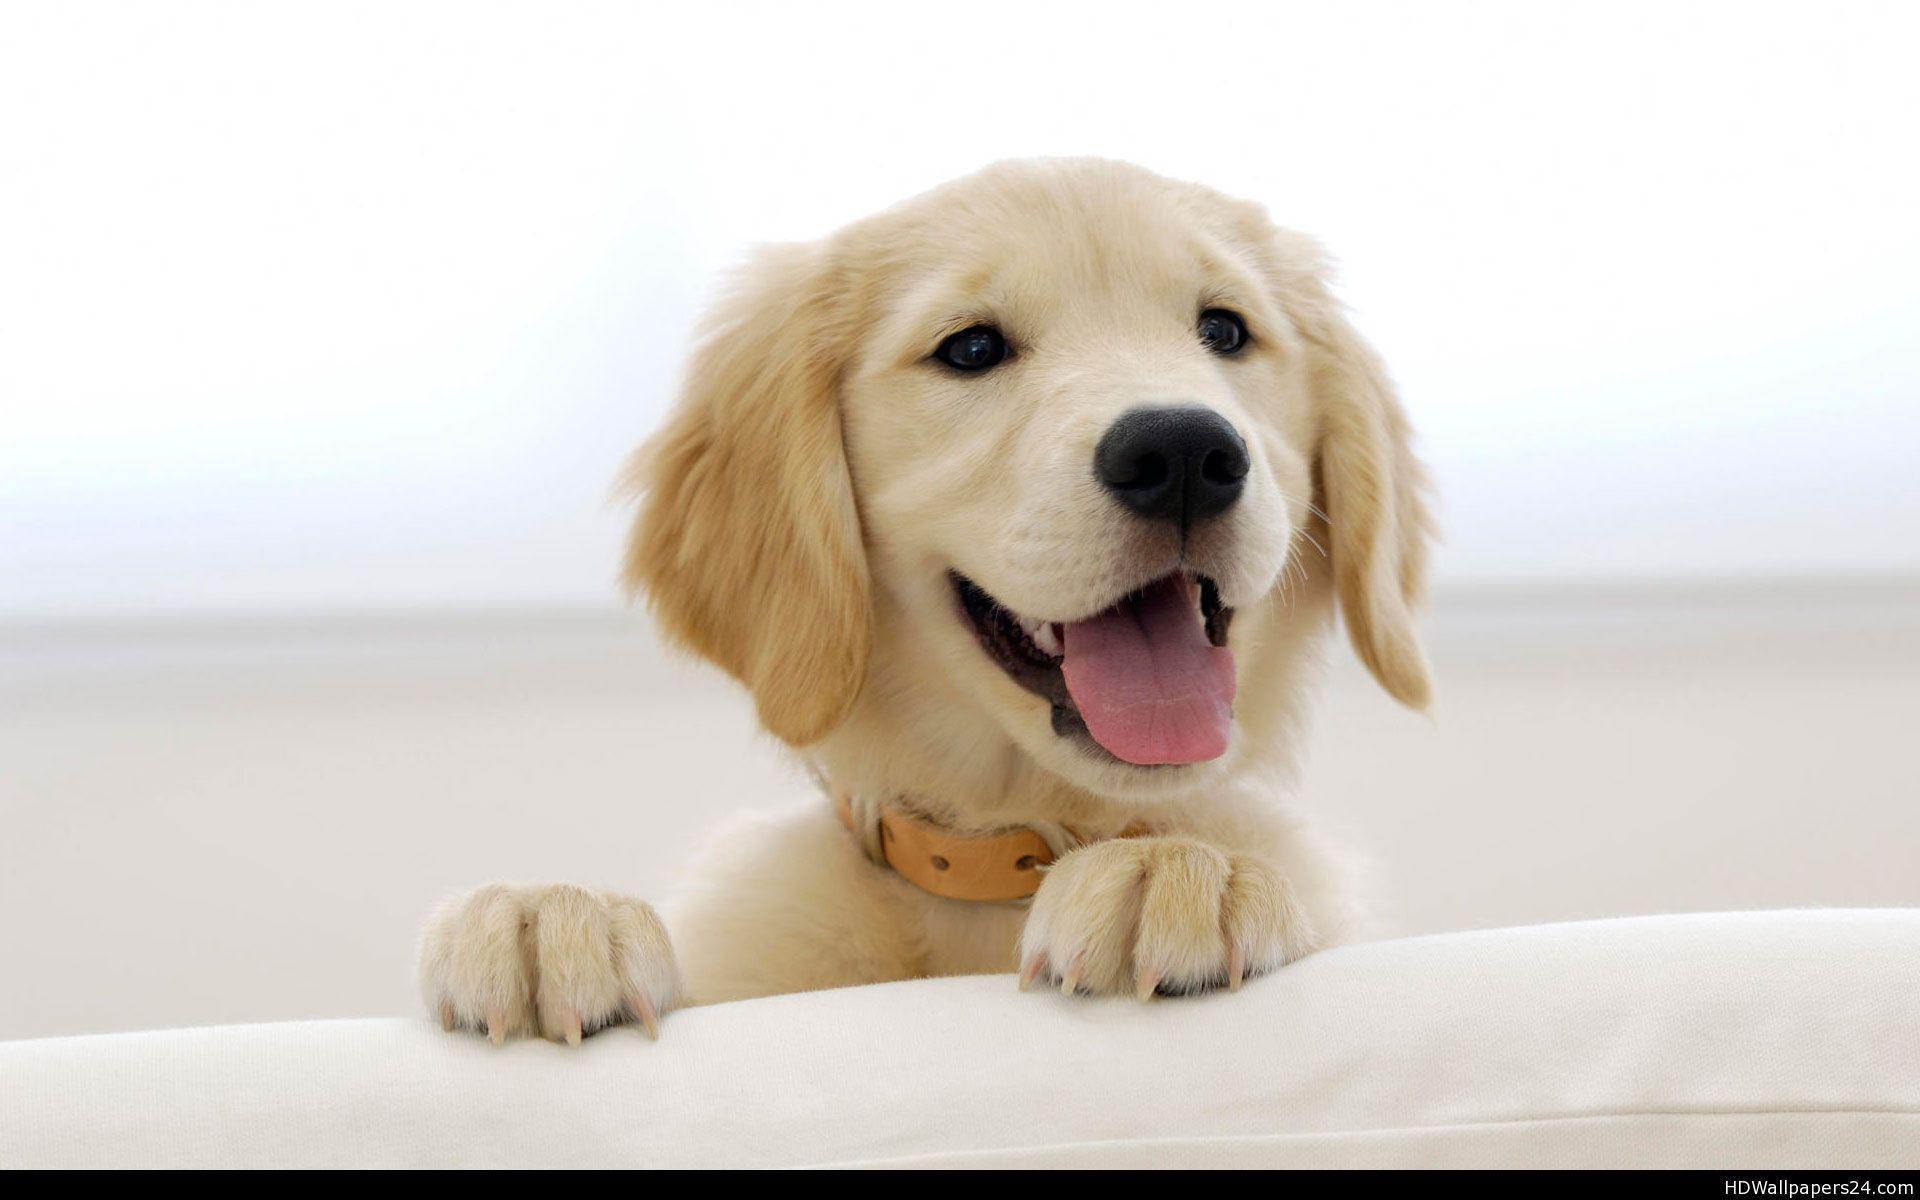 Hình nền chó golden retriever tạo ra một không gian ấm cúng và dễ chịu cho điện thoại hoặc máy tính của bạn. Thiết kế đơn giản, màu sắc đẹp, hình ảnh tuyệt vời và miễn phí cho tất cả mọi người. Hãy cài đặt và nhận được sự ủng hộ từ bạn bè và gia đình của bạn.